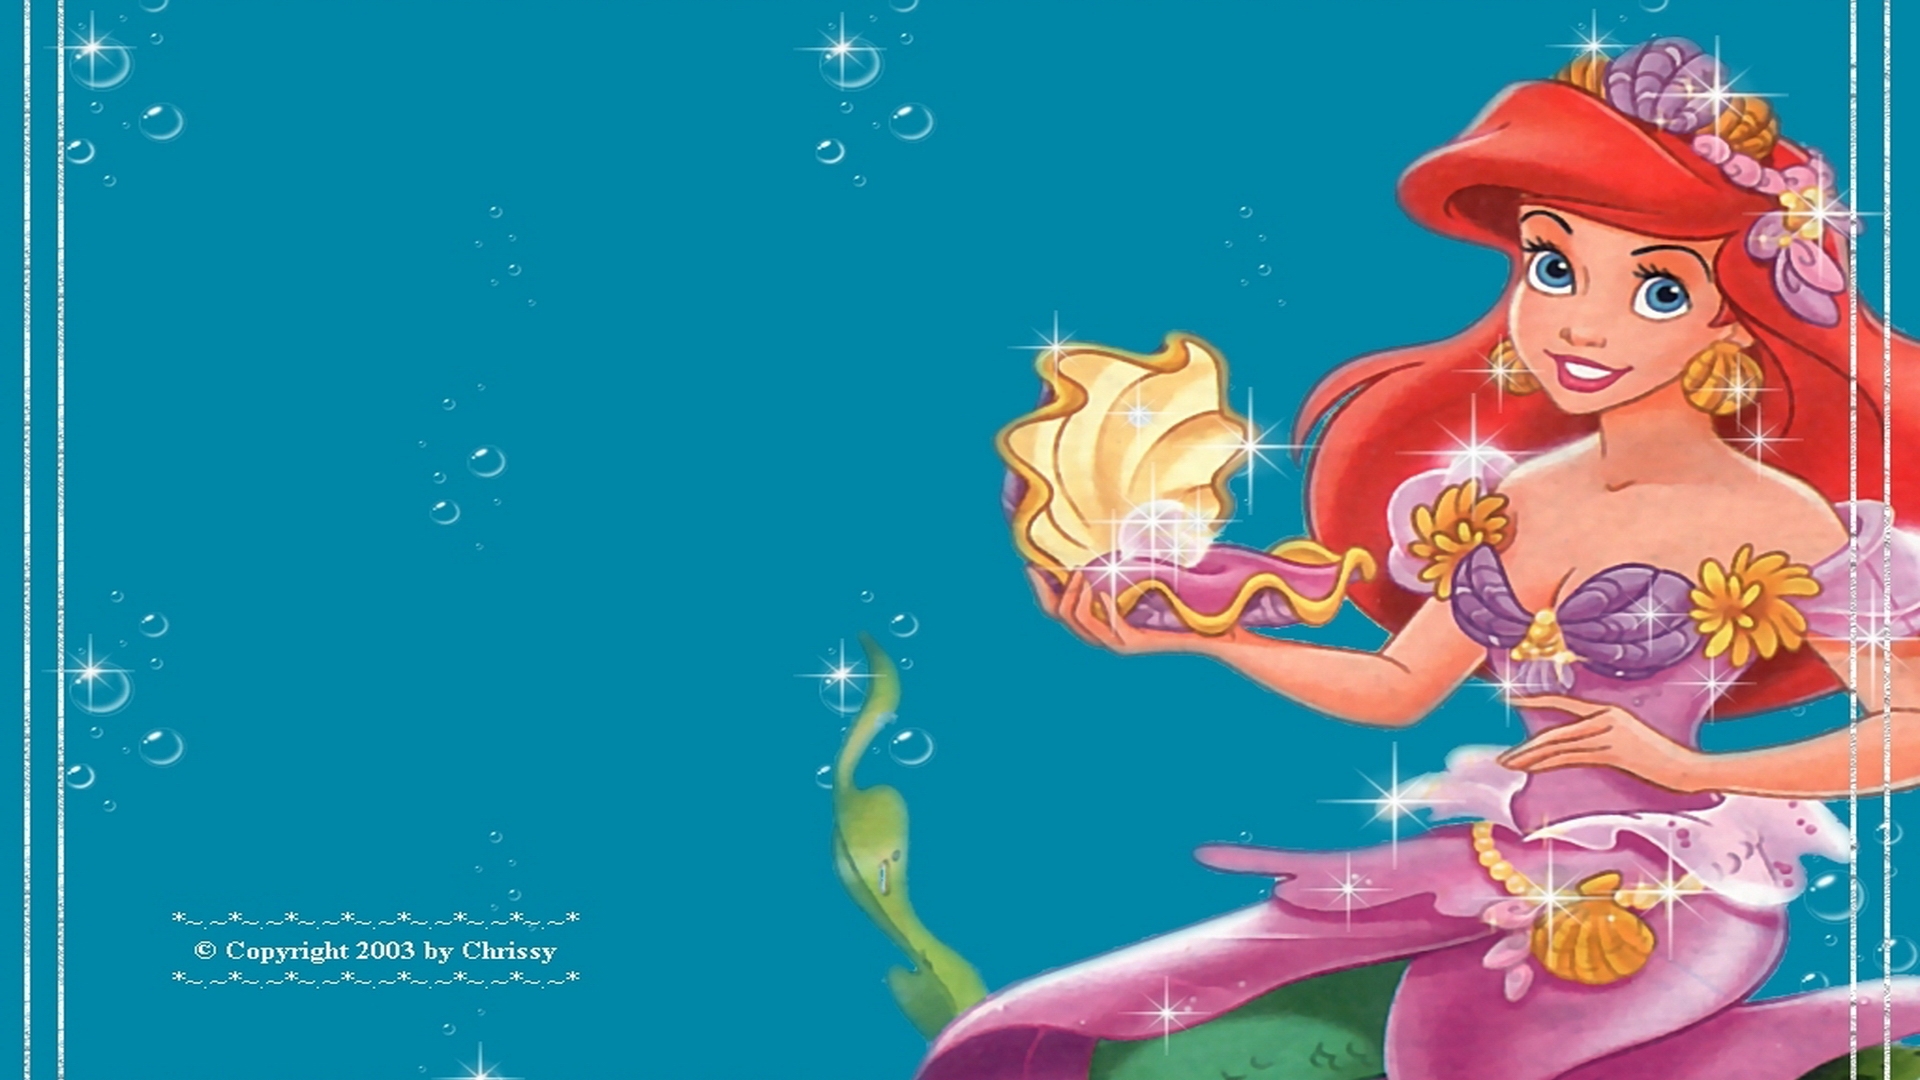 Ariel Wallpaper Disney Princess 6243844 1024 768jpg - Little Mermaid Princess Background , HD Wallpaper & Backgrounds